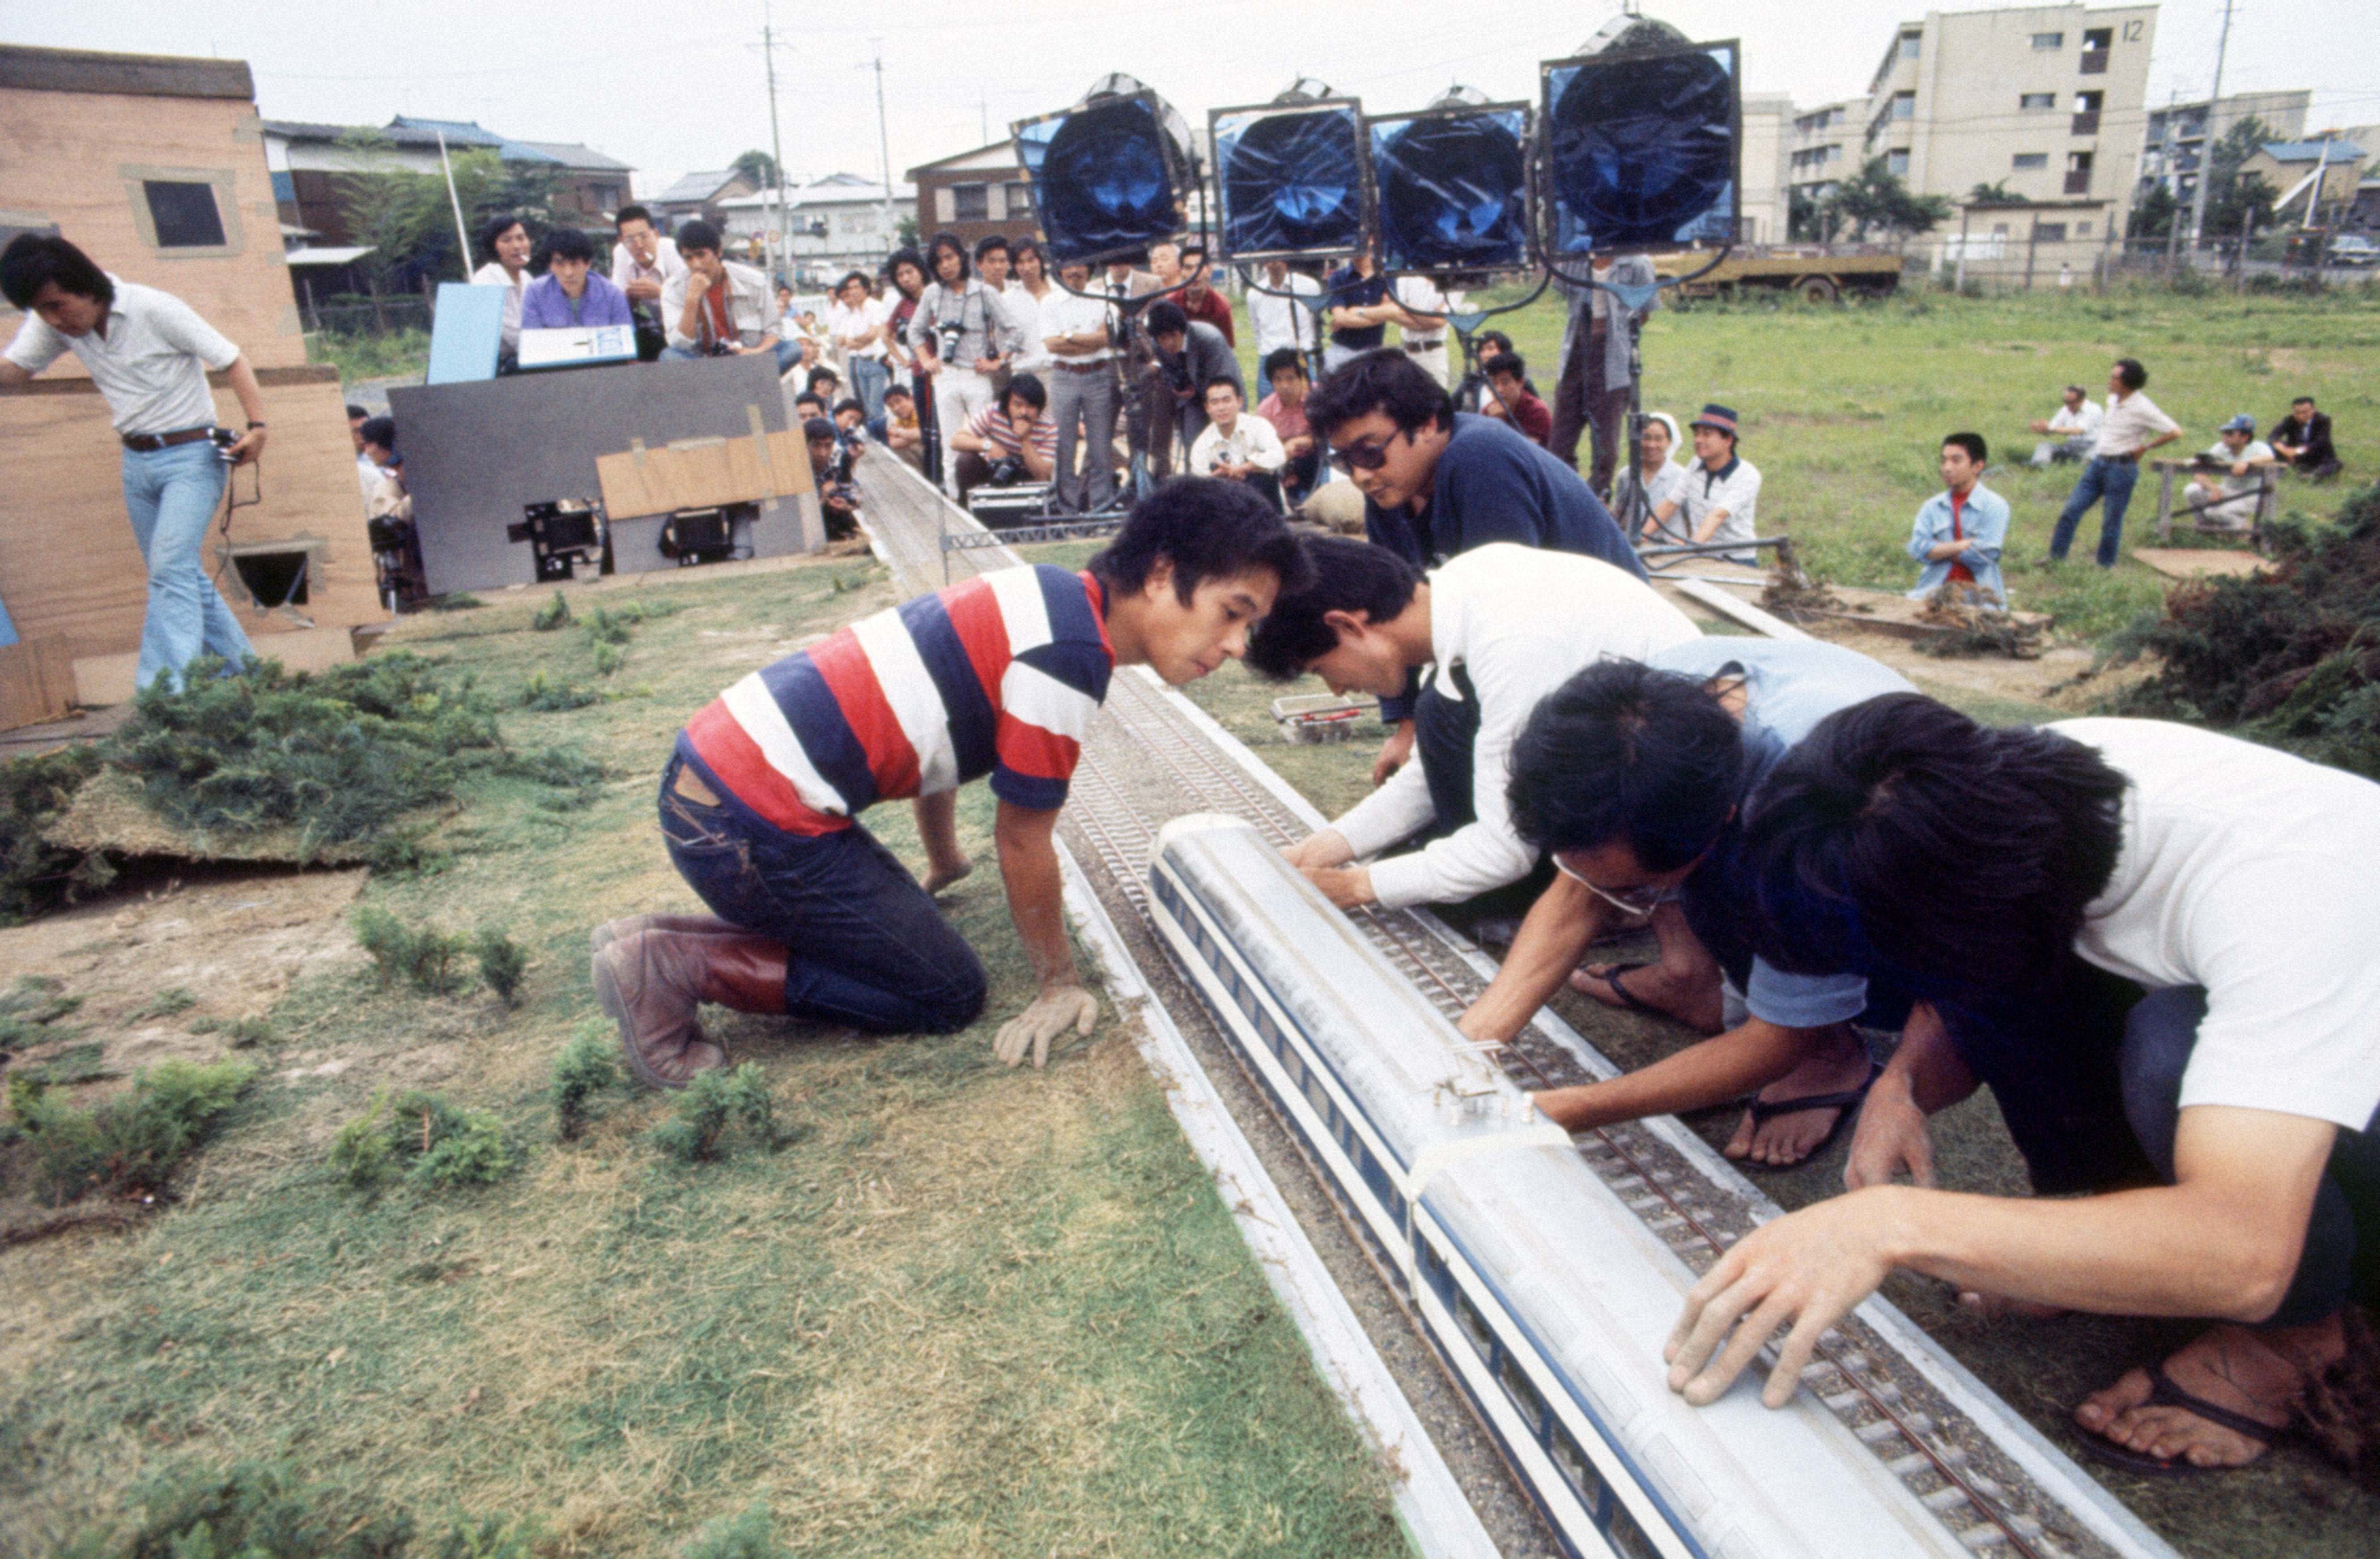 １９７５年６月２０日東京東映撮影所の野外オープンセットでの「新幹線大爆破」撮影シーン　サンデー毎日出版写真部員撮影